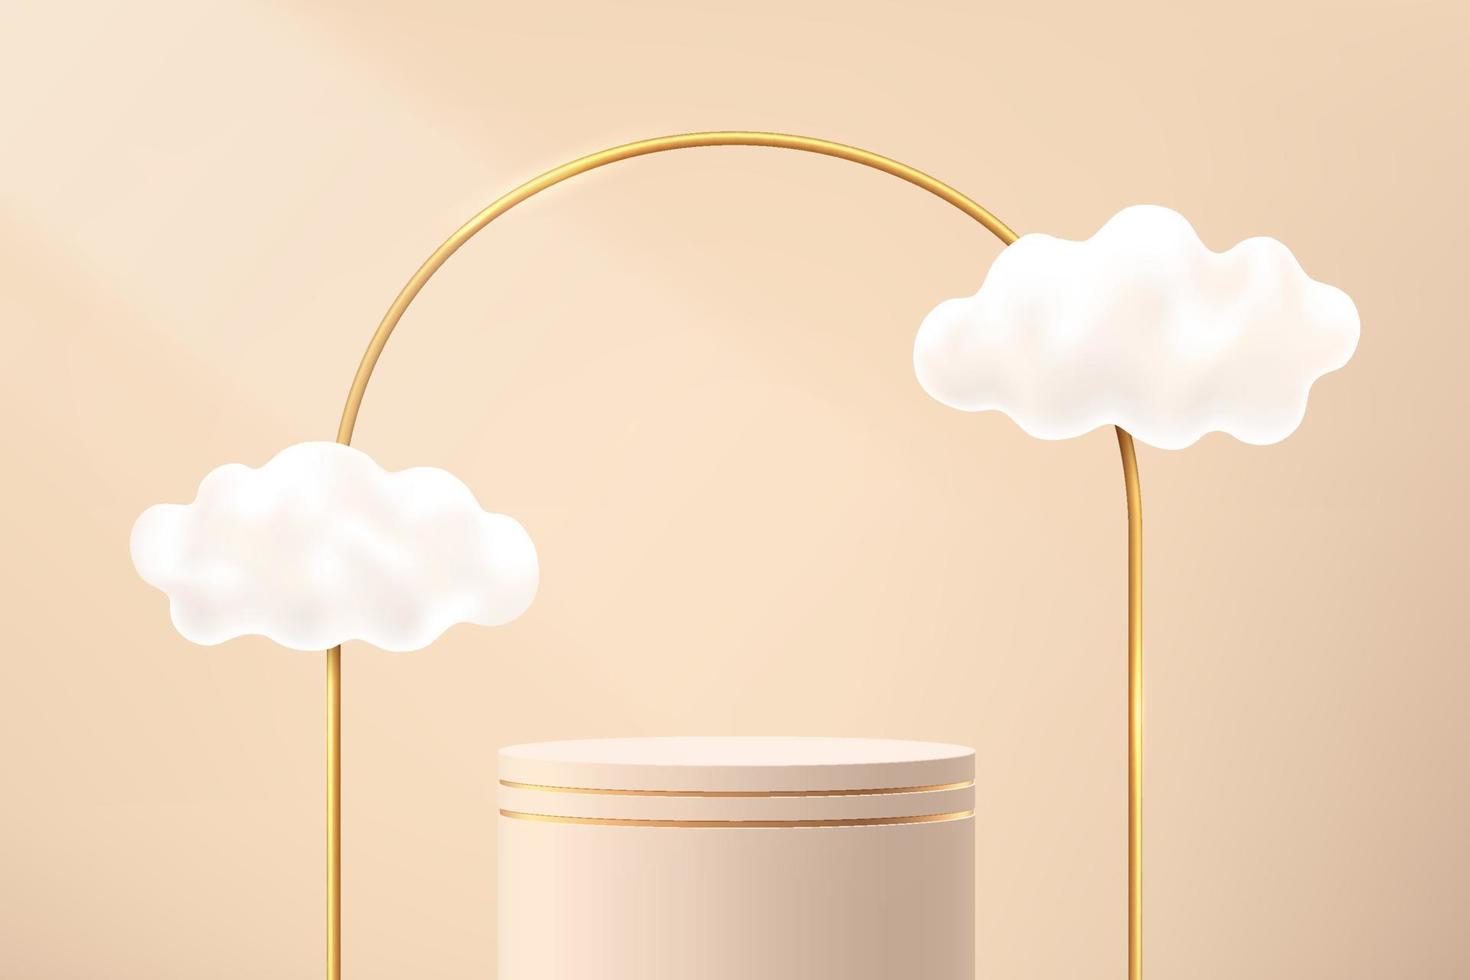 pedestal de cilindro 3d beige abstracto o podio de pie con arcos dorados y vuelo de nubes. escena mínima marrón claro de lujo para la presentación de productos cosméticos. plataforma de renderizado geométrico vectorial vector